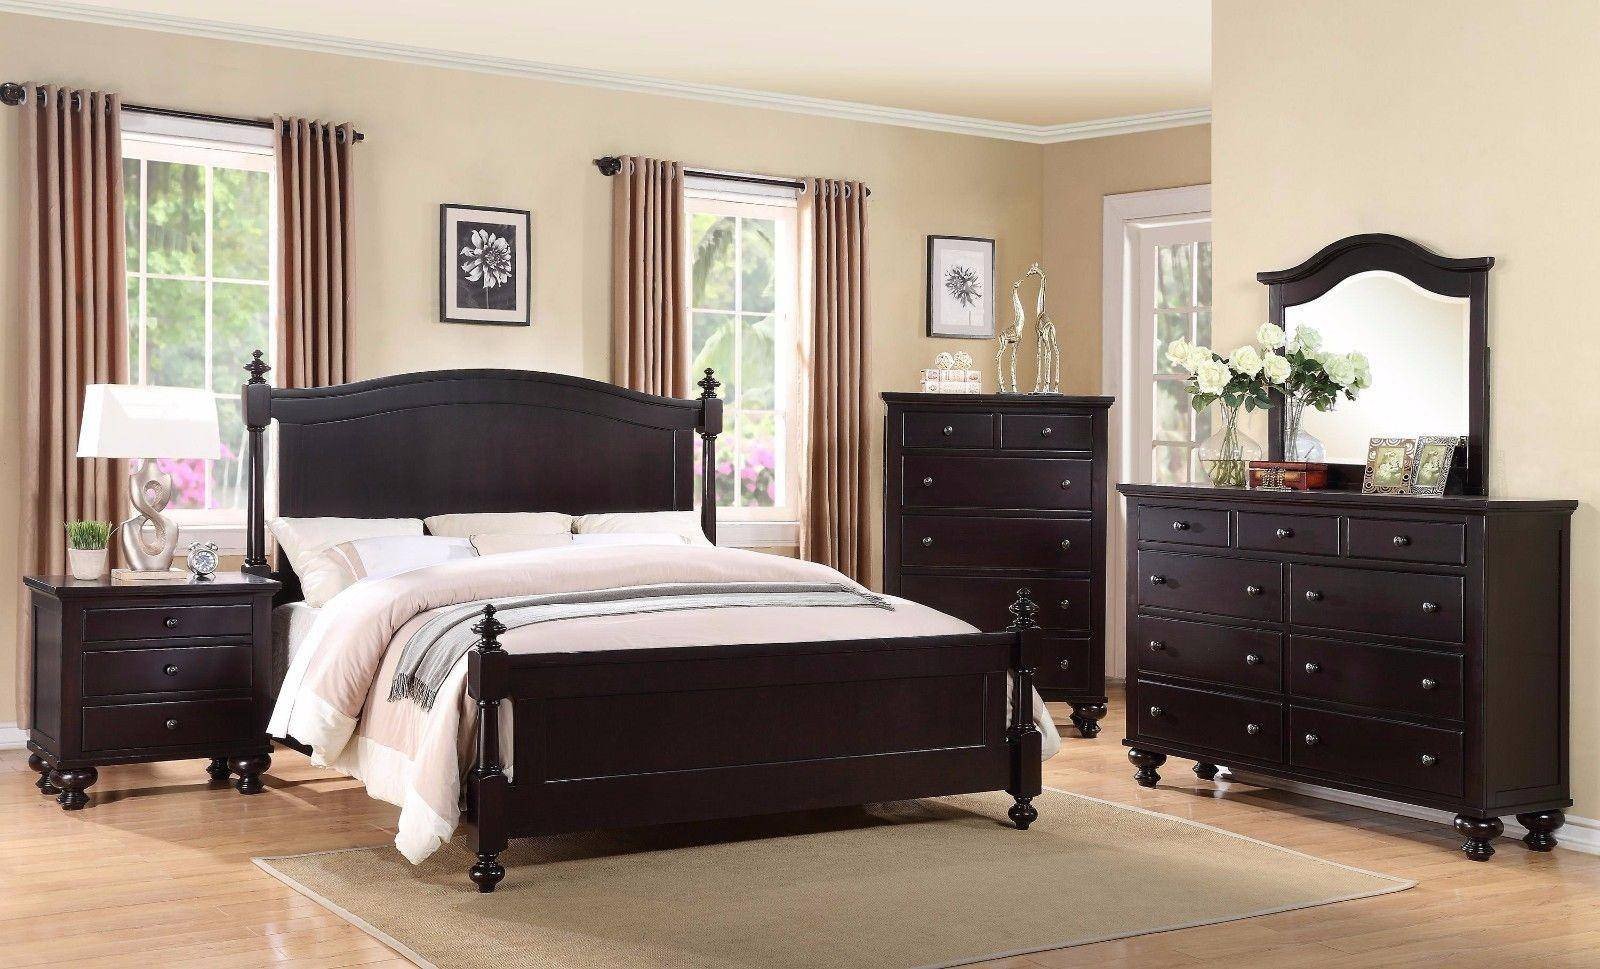 Black Full Size Bedroom Set Best Of Crown Mark B1350 sommer Traditional Black Espresso King Size Bedroom Set 3 Pcs